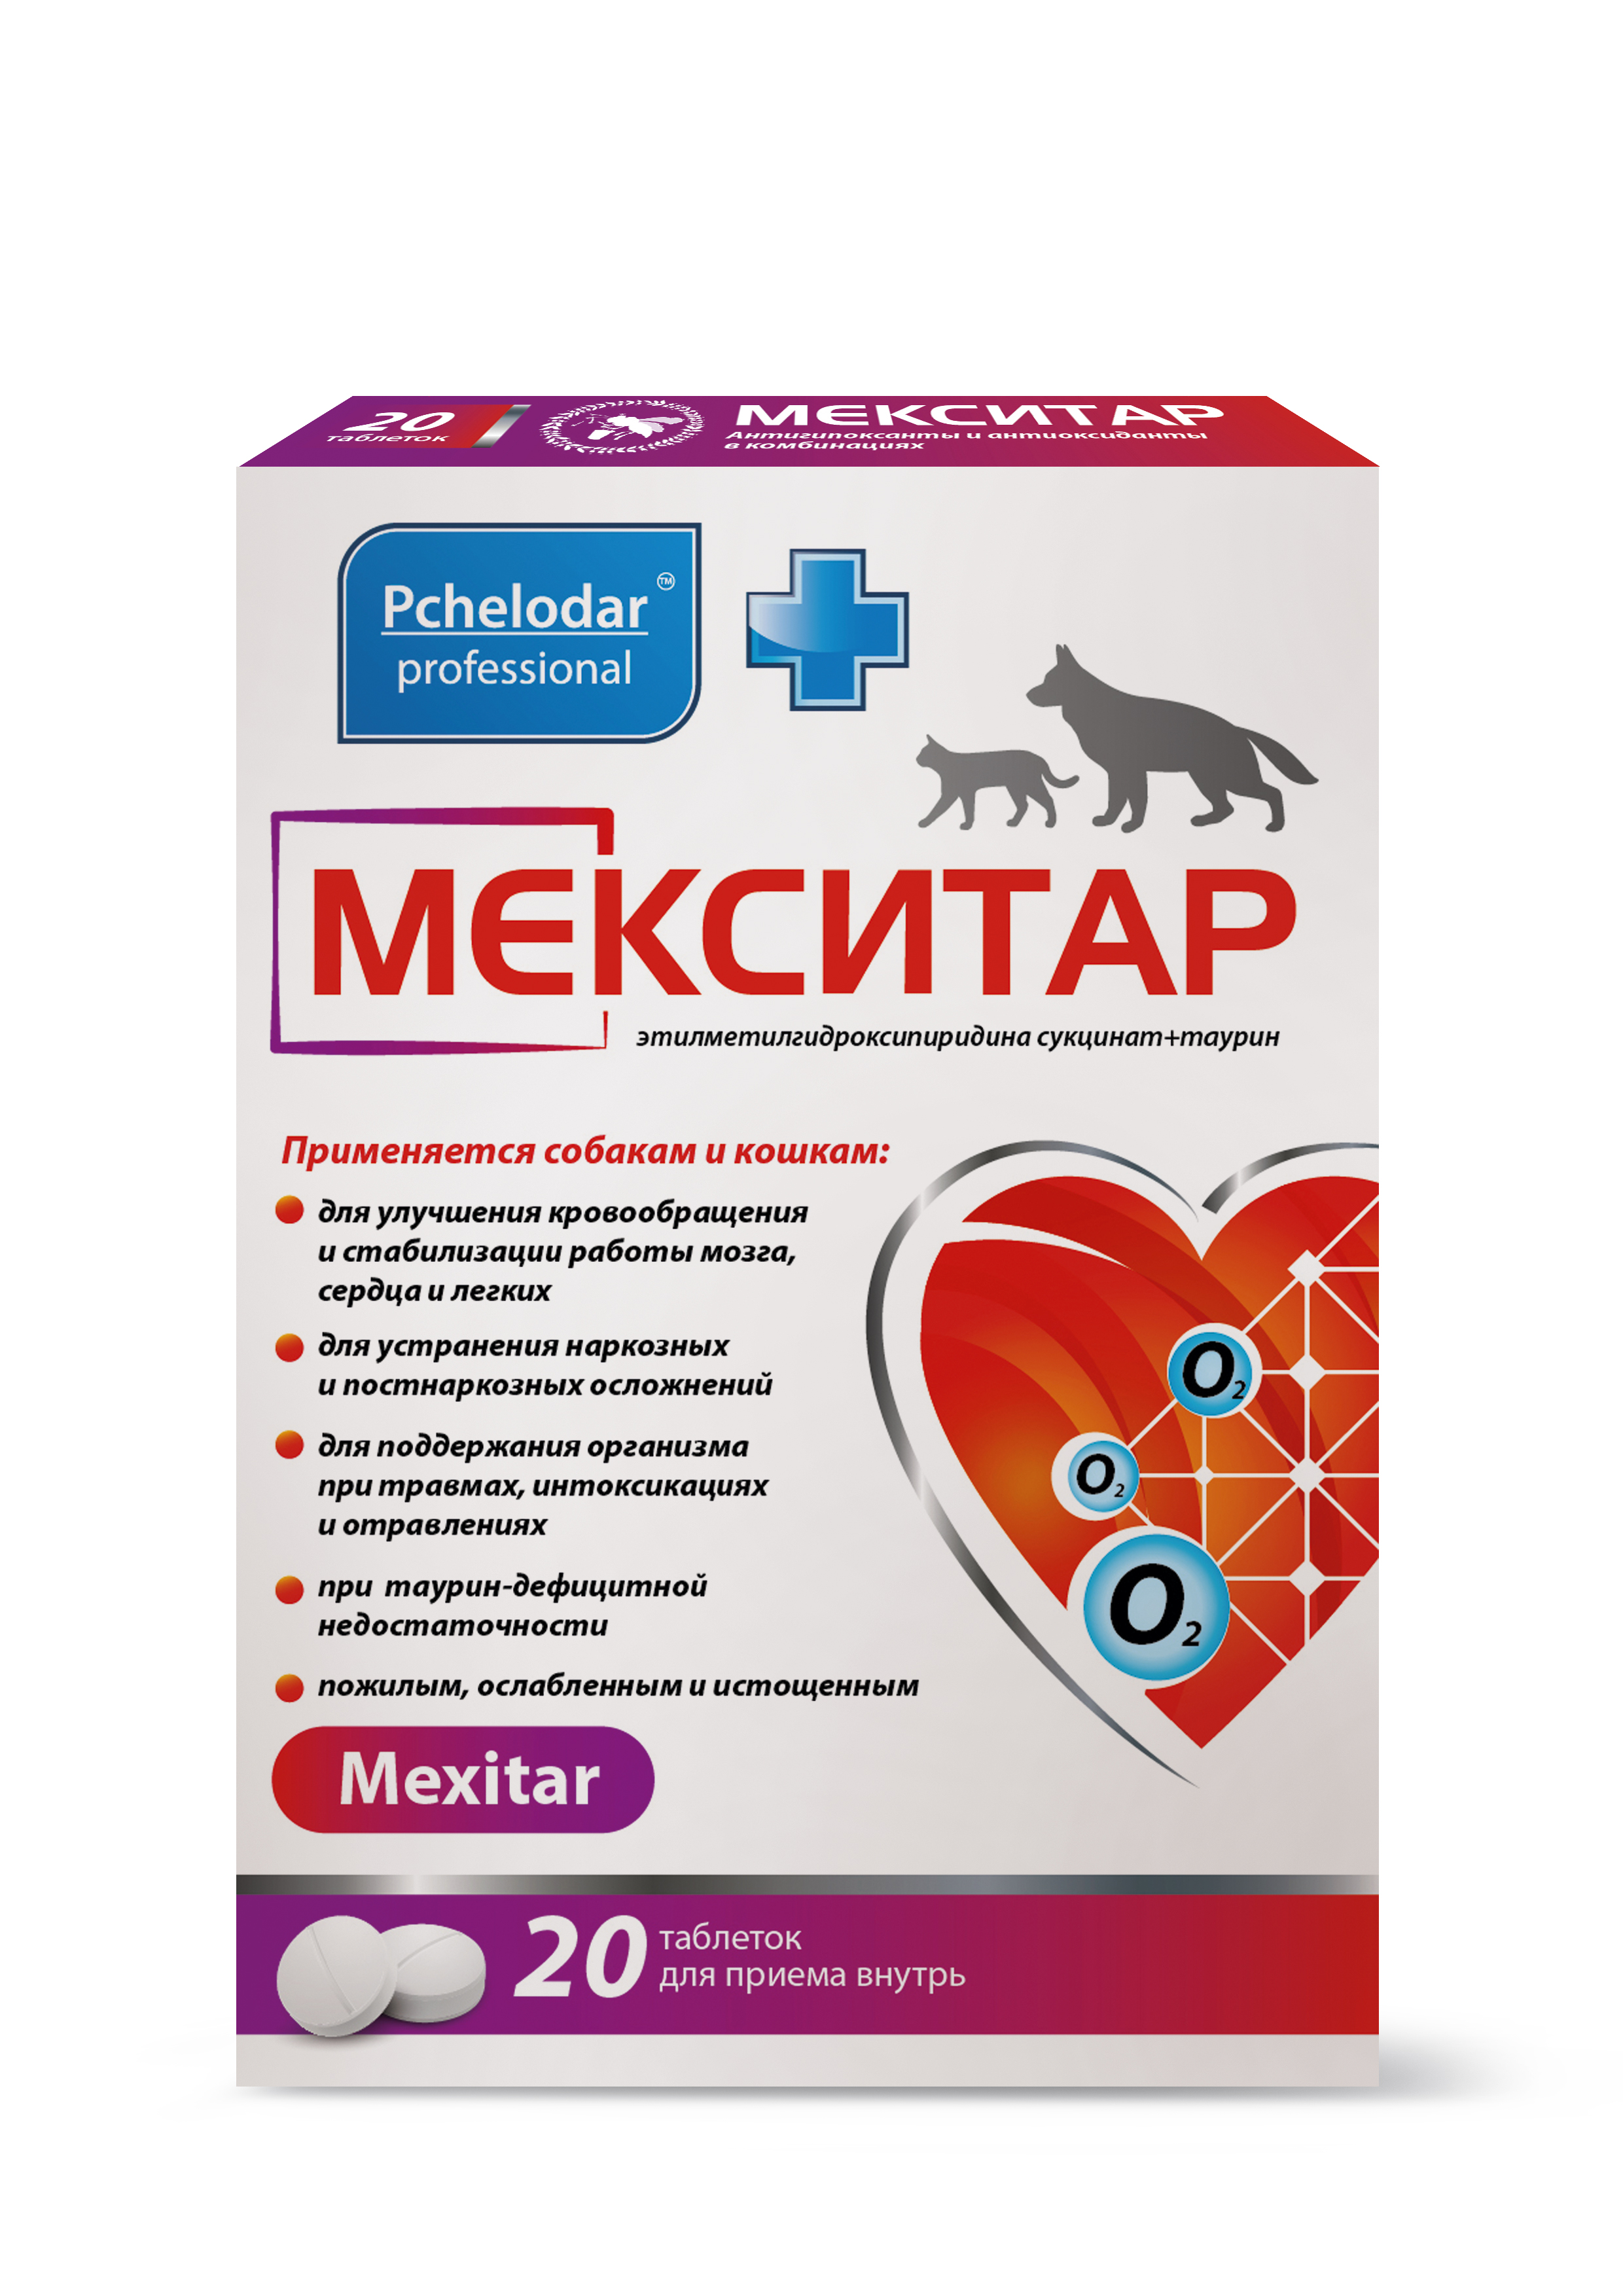 МЕКСИТАР (20 таблеток)